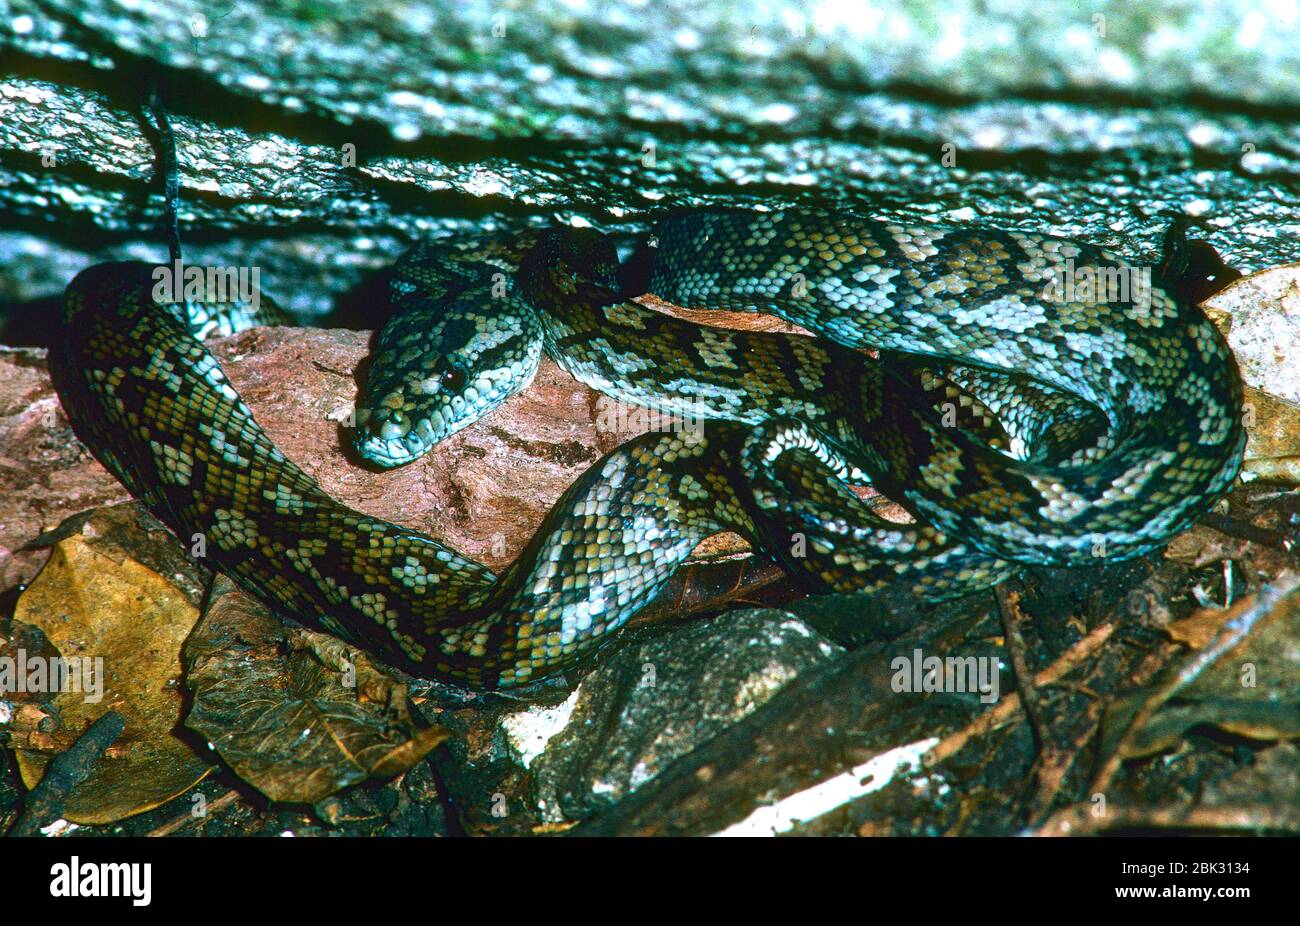 Australian scrub Python, Morelia kinghorni, Pythonidae, Python, in rock fissure, snake, reptile, animal, Fitzroy Island, Queensland, Australia Stock Photo